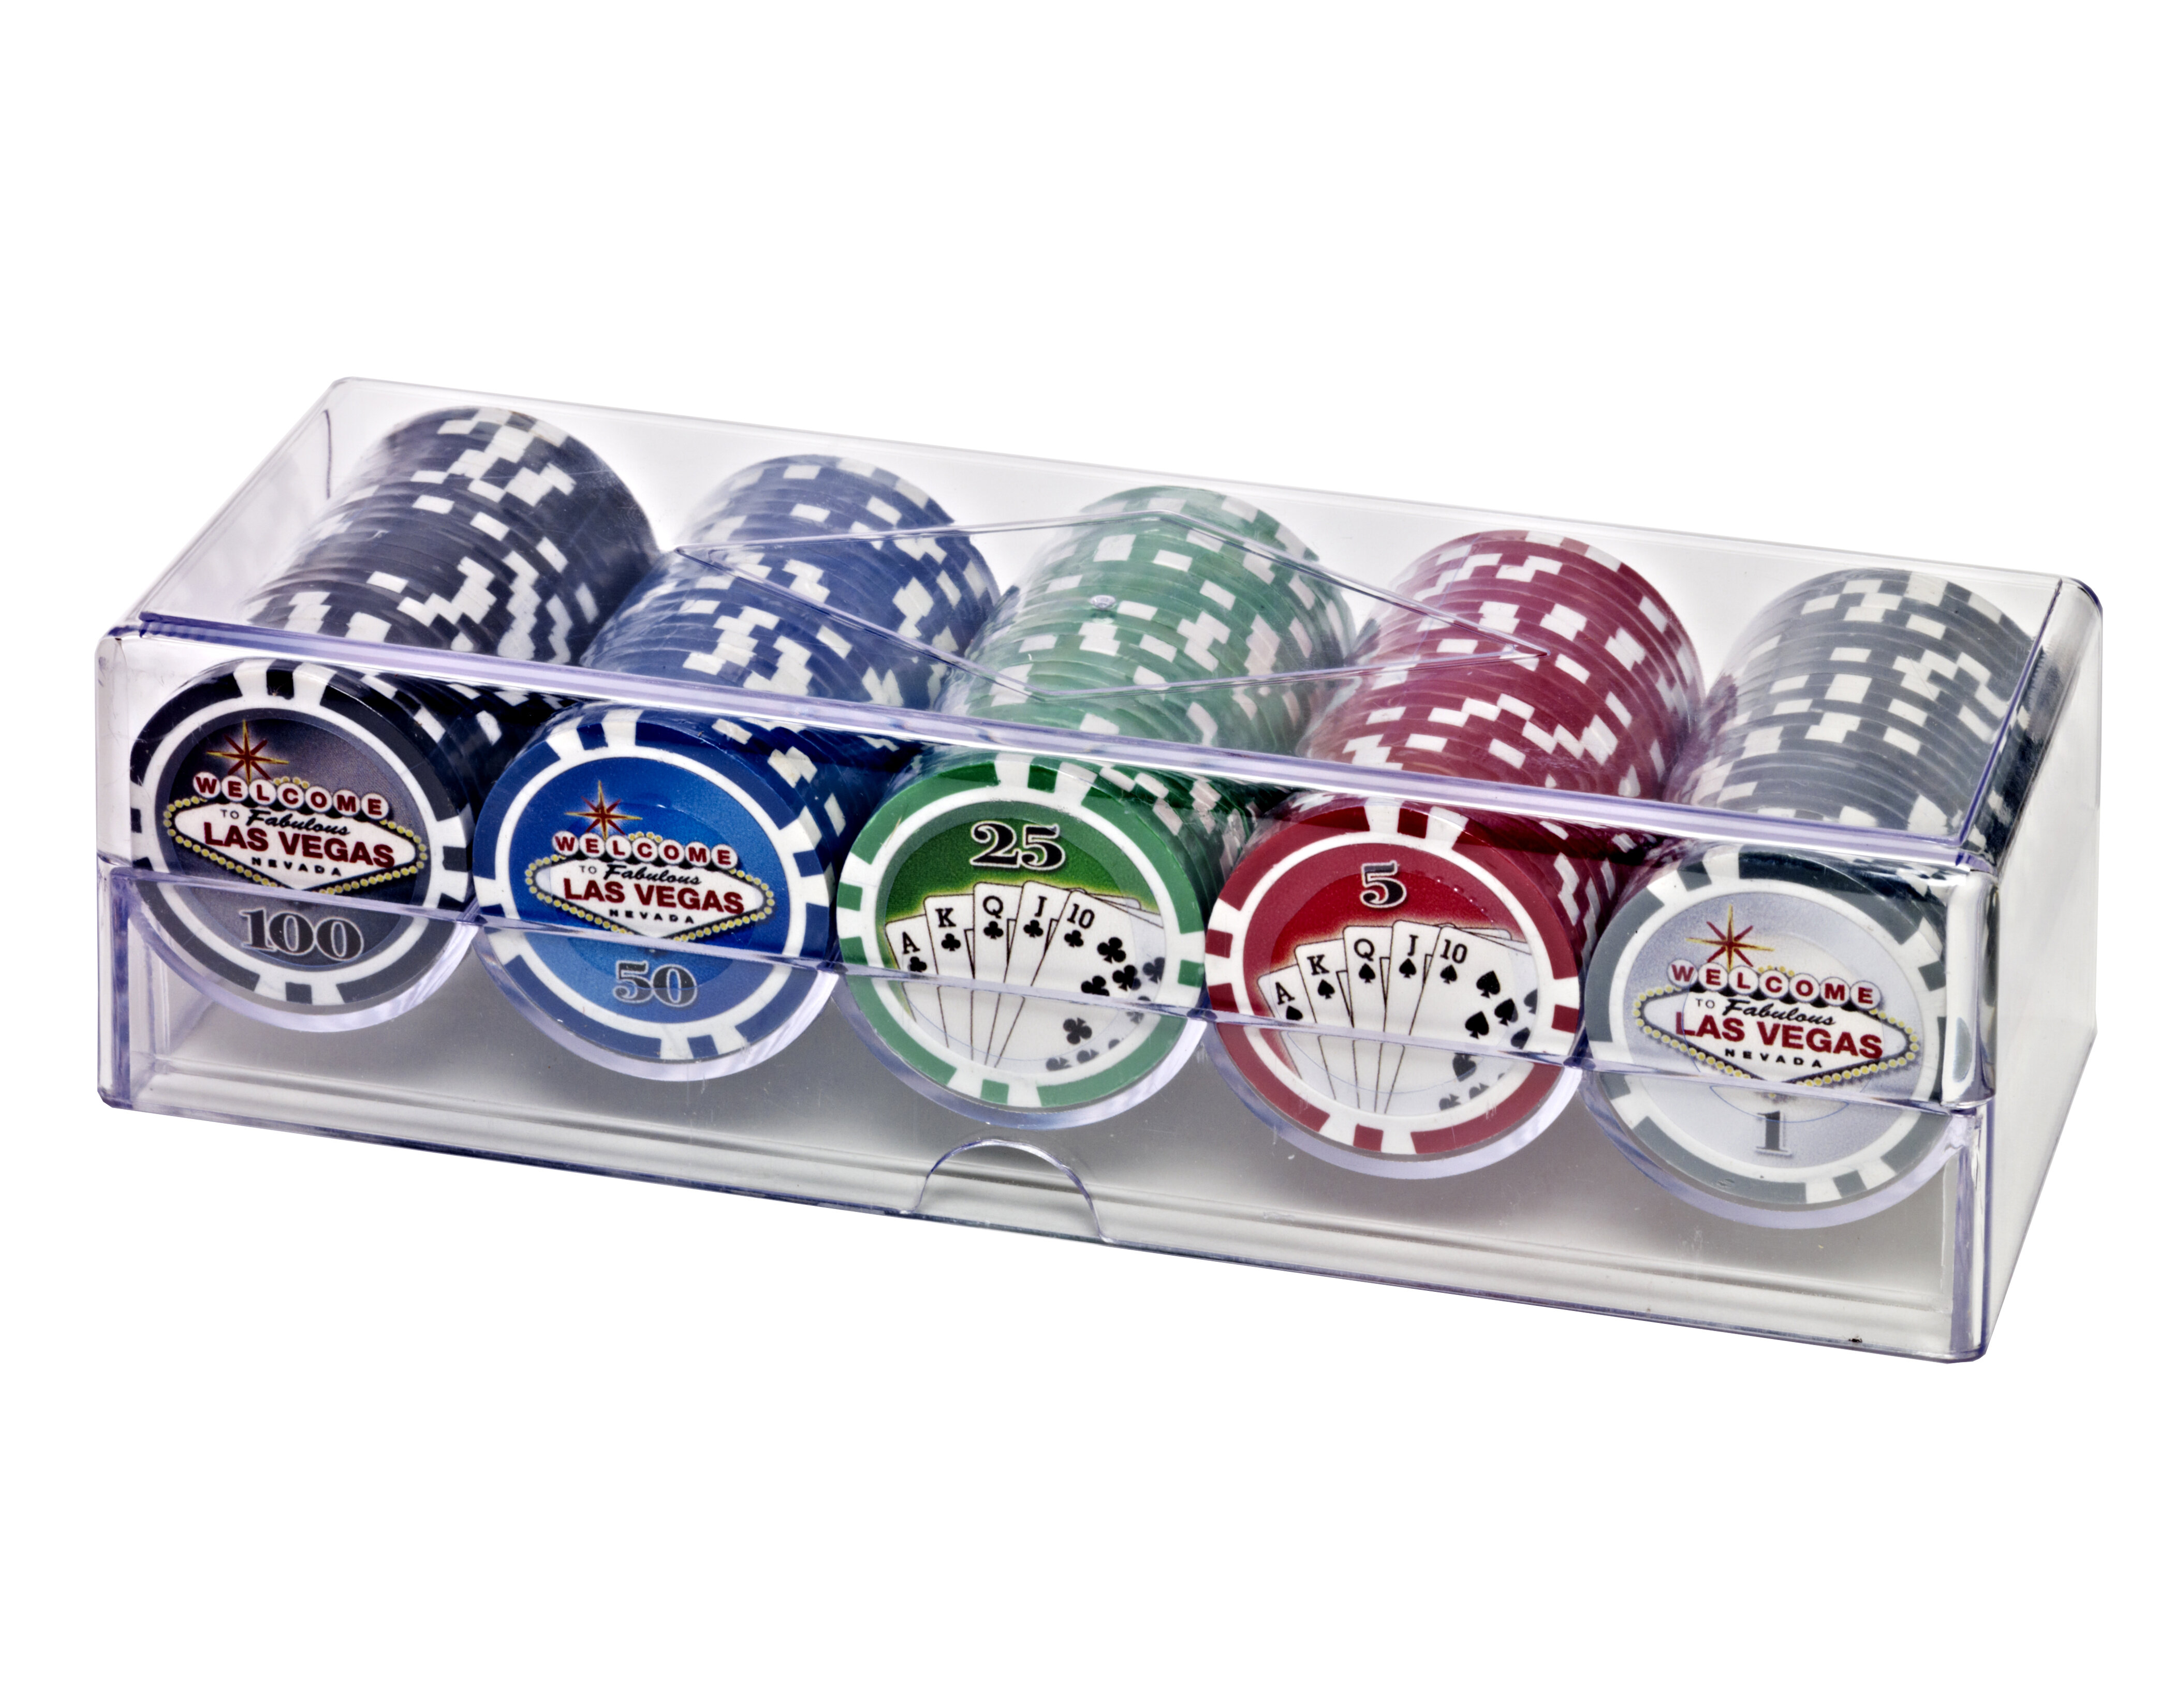 New POKER CHIP SET 100 Poker Chips Vegas Brand NEW IN BOX Red White Blue 